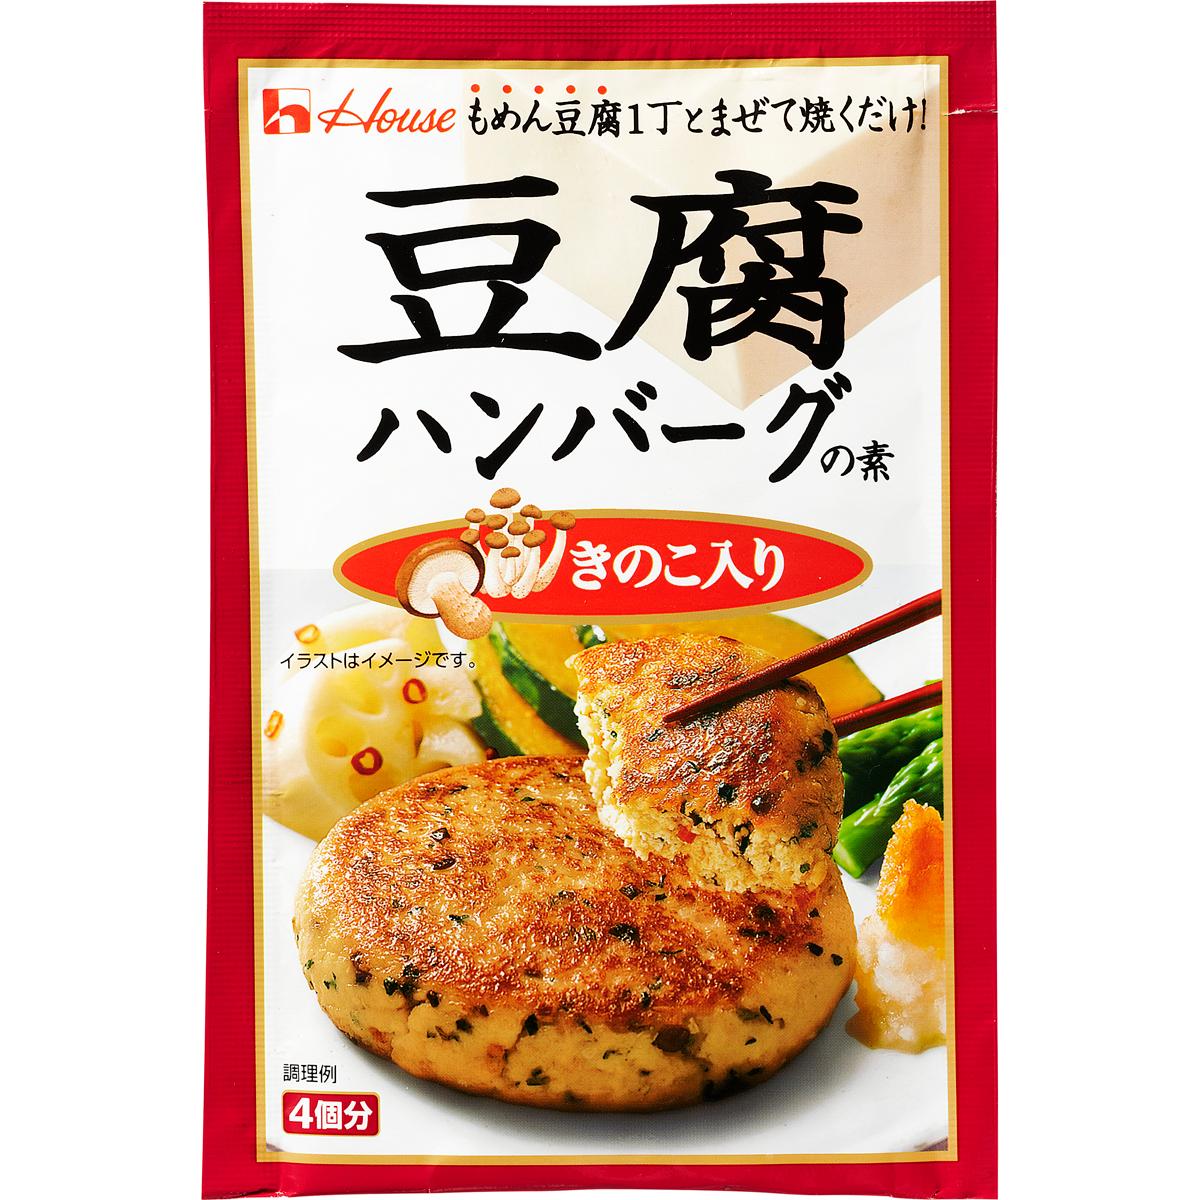 ハンバーグ グラタン 洋風ソースの素 ハンバーグ 豆腐ハンバーグの素 商品カタログトップ ハウス食品